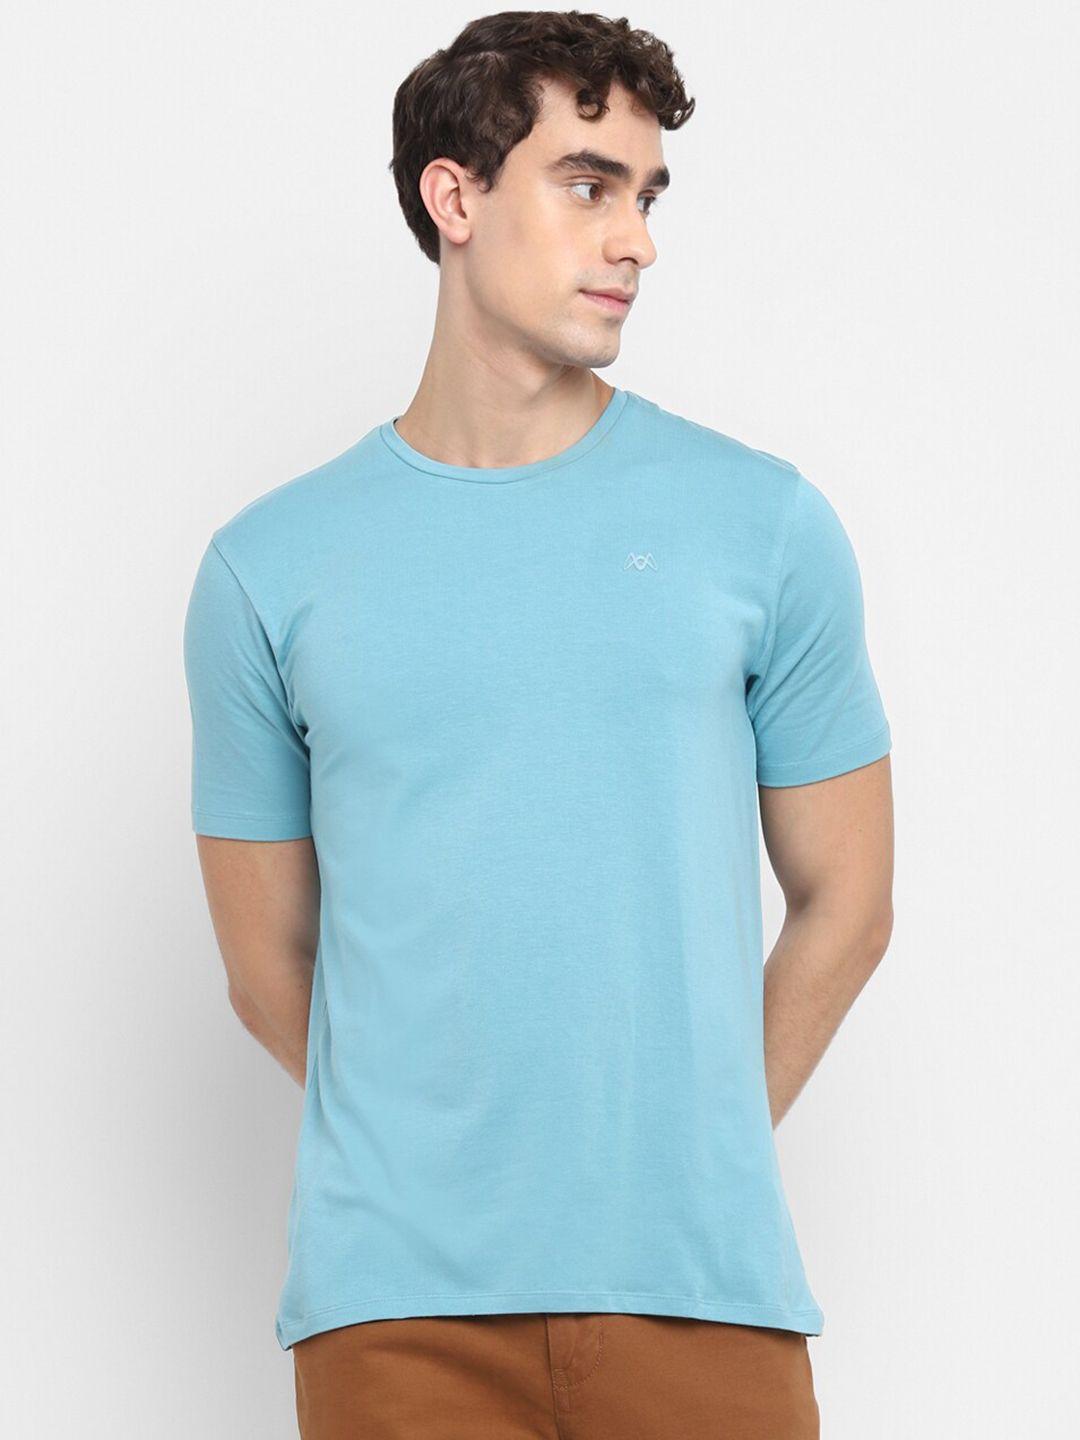 muwin men turquoise blue cotton  t-shirt